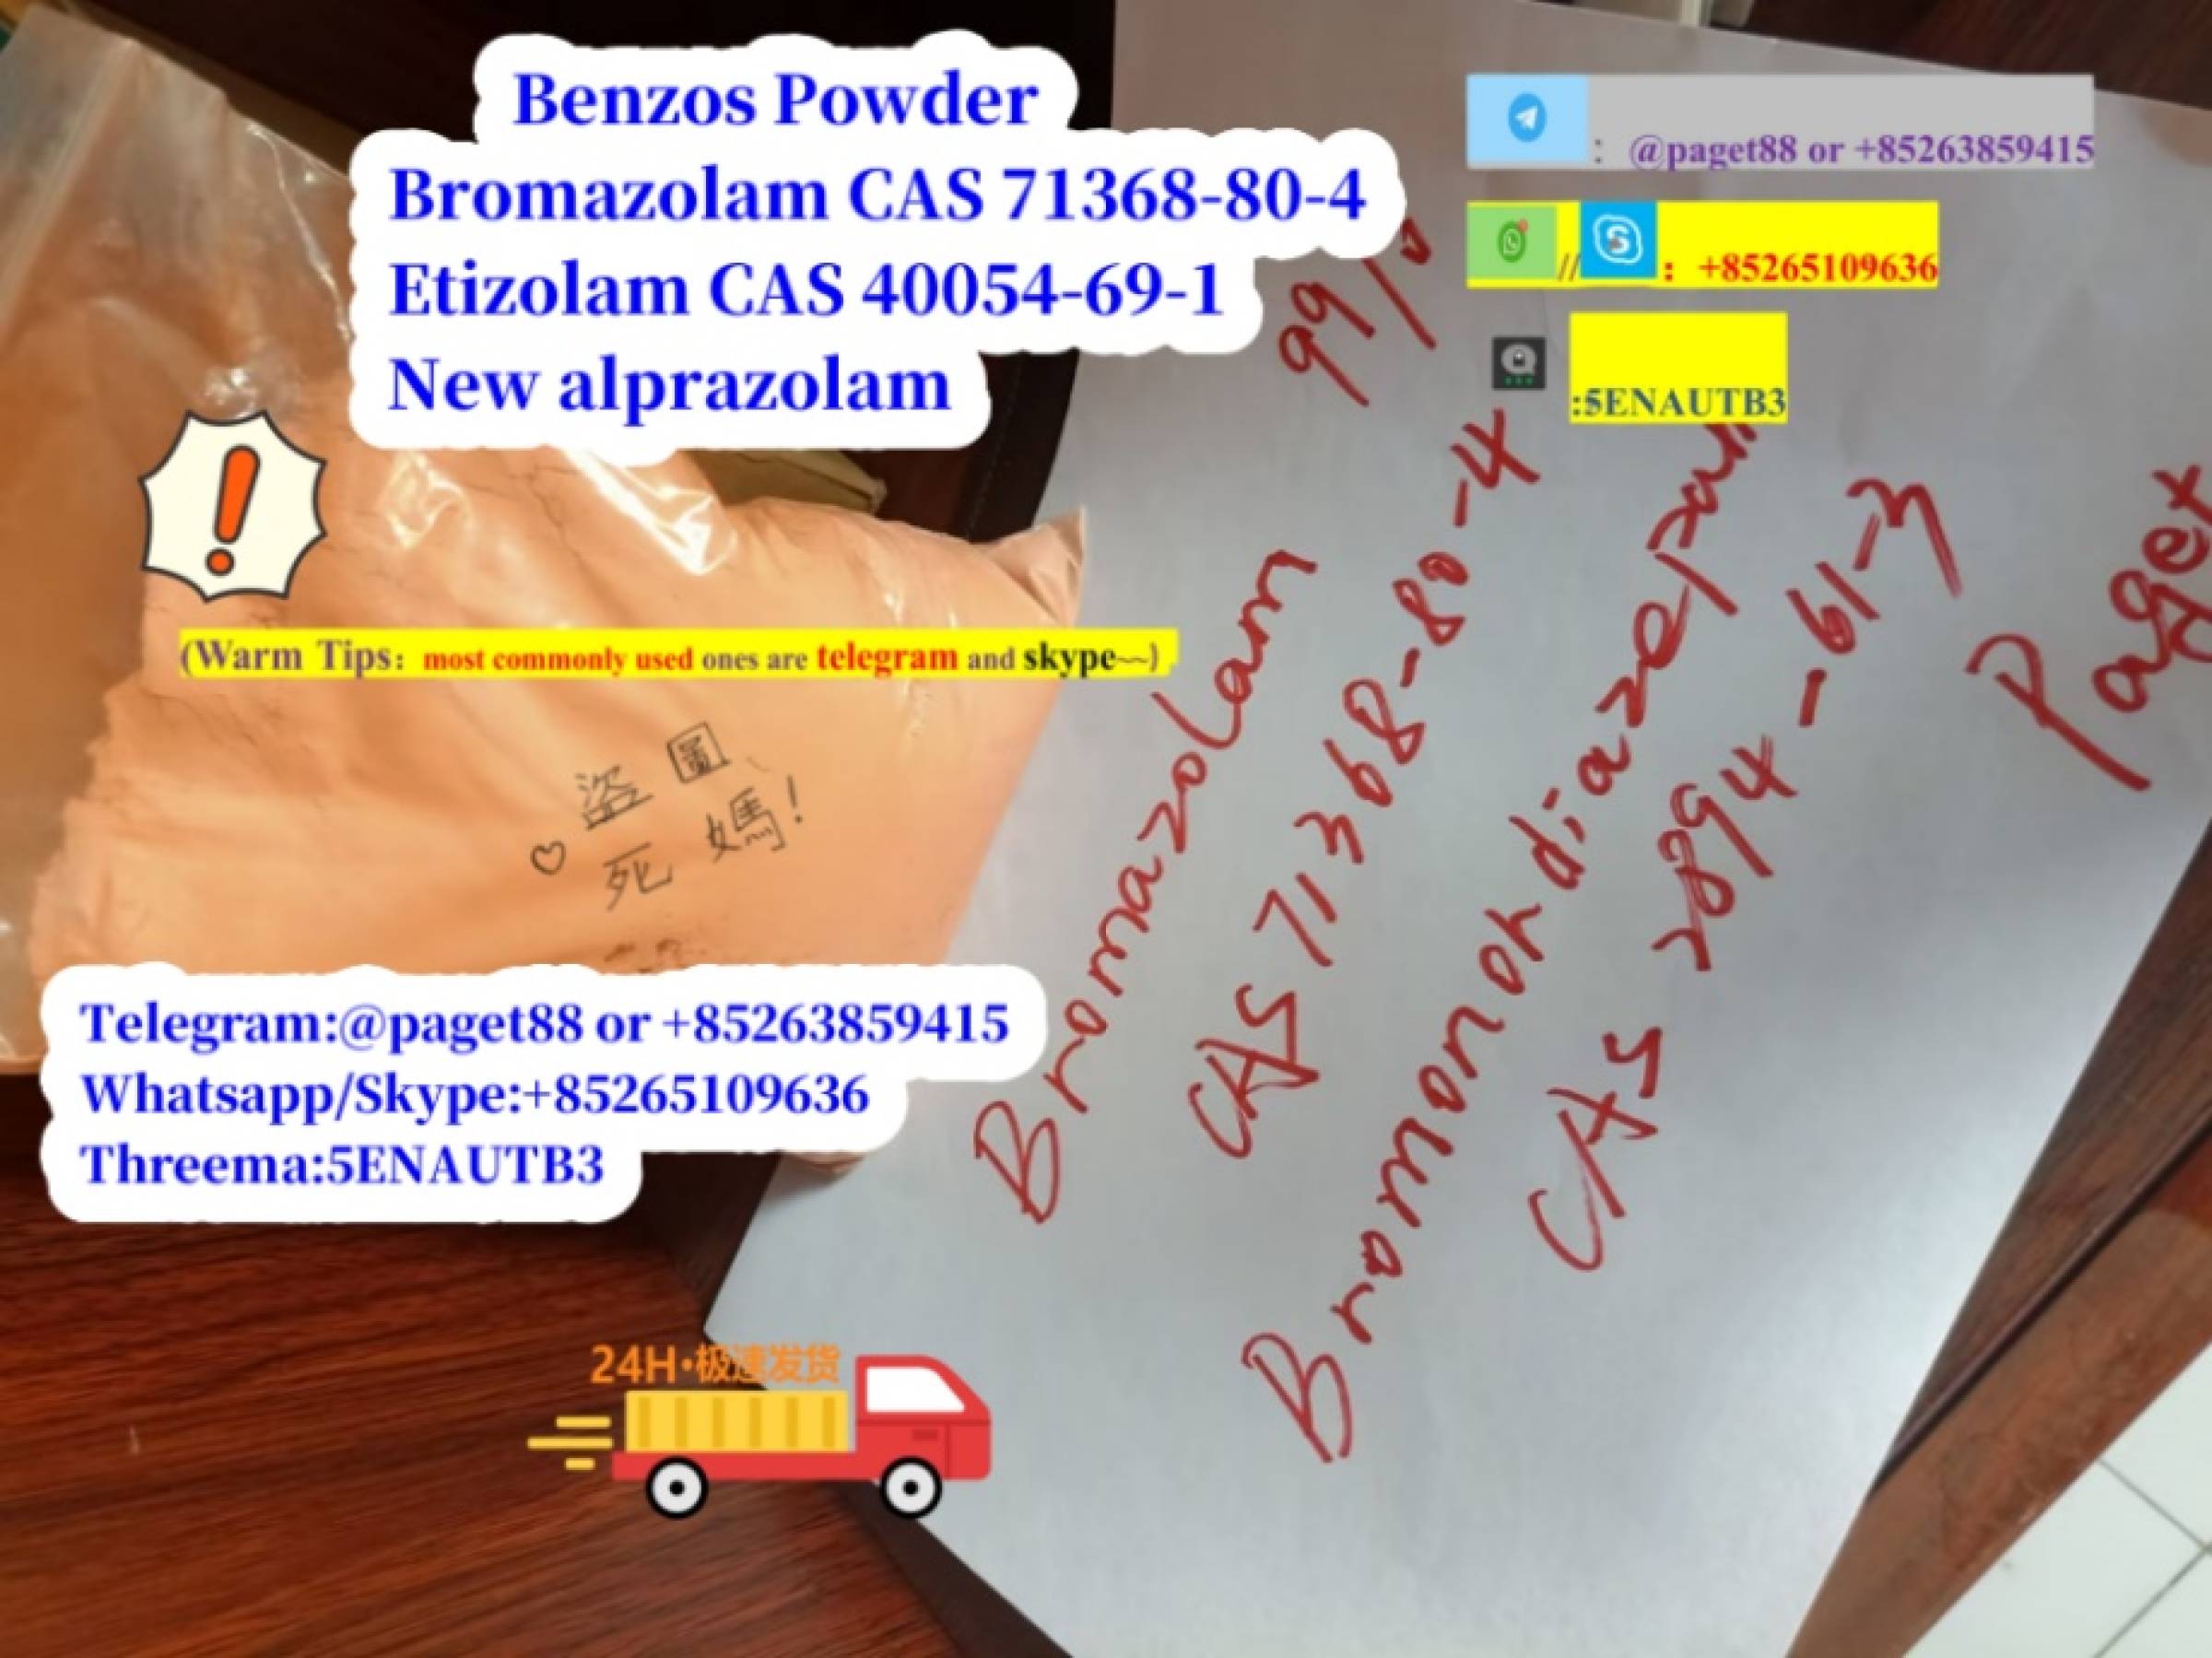 High quality Benzos Powder Bromazolam CAS 71368-80-4, Etizolam CAS 40054-69-1,alprazolam from Top vendor!